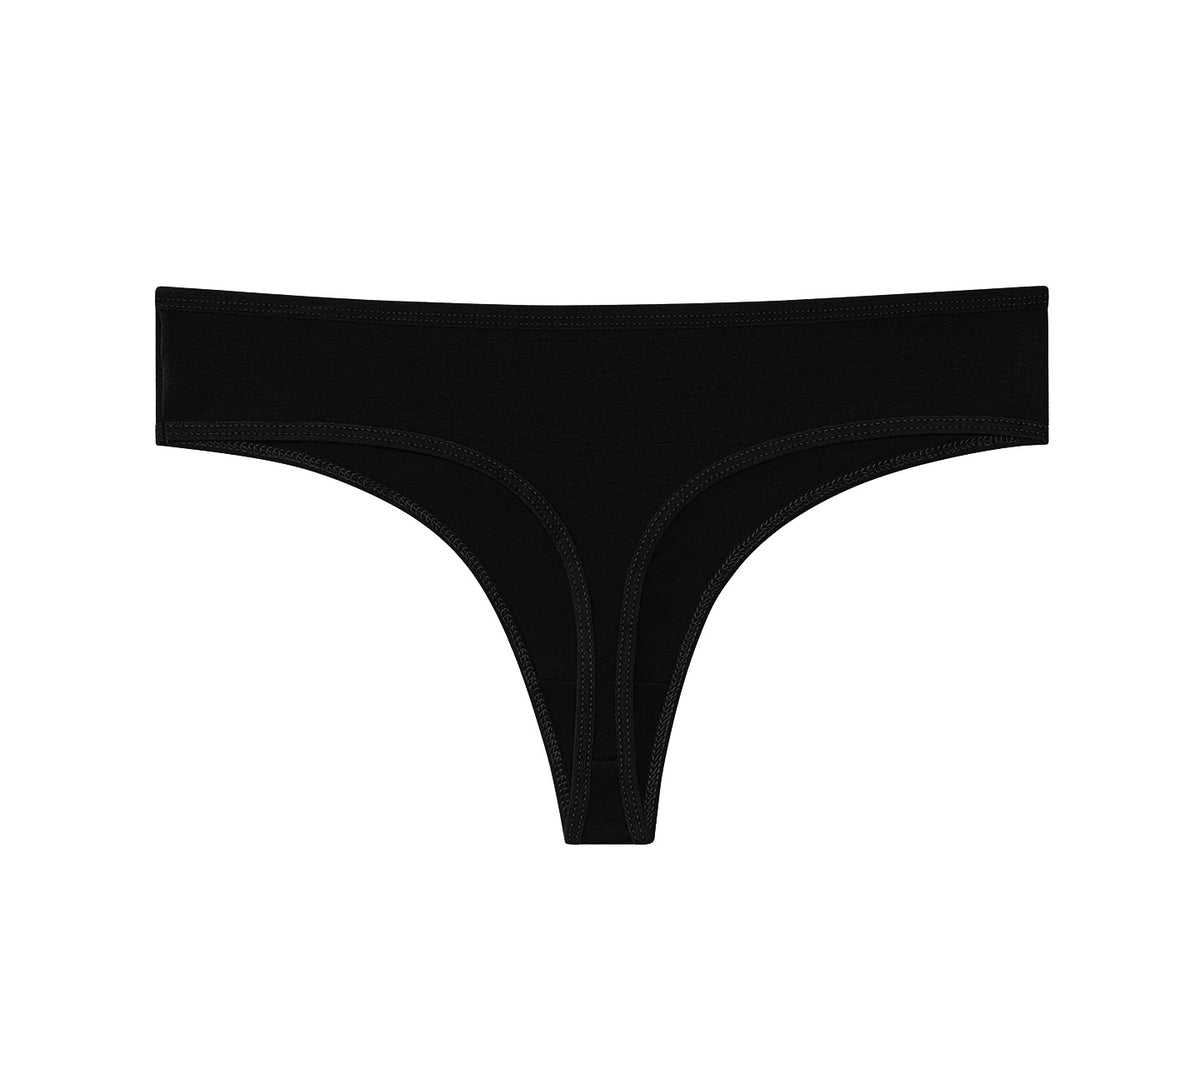 Nabtos Black Cotton Thongs Women's Basic Panties Underwear